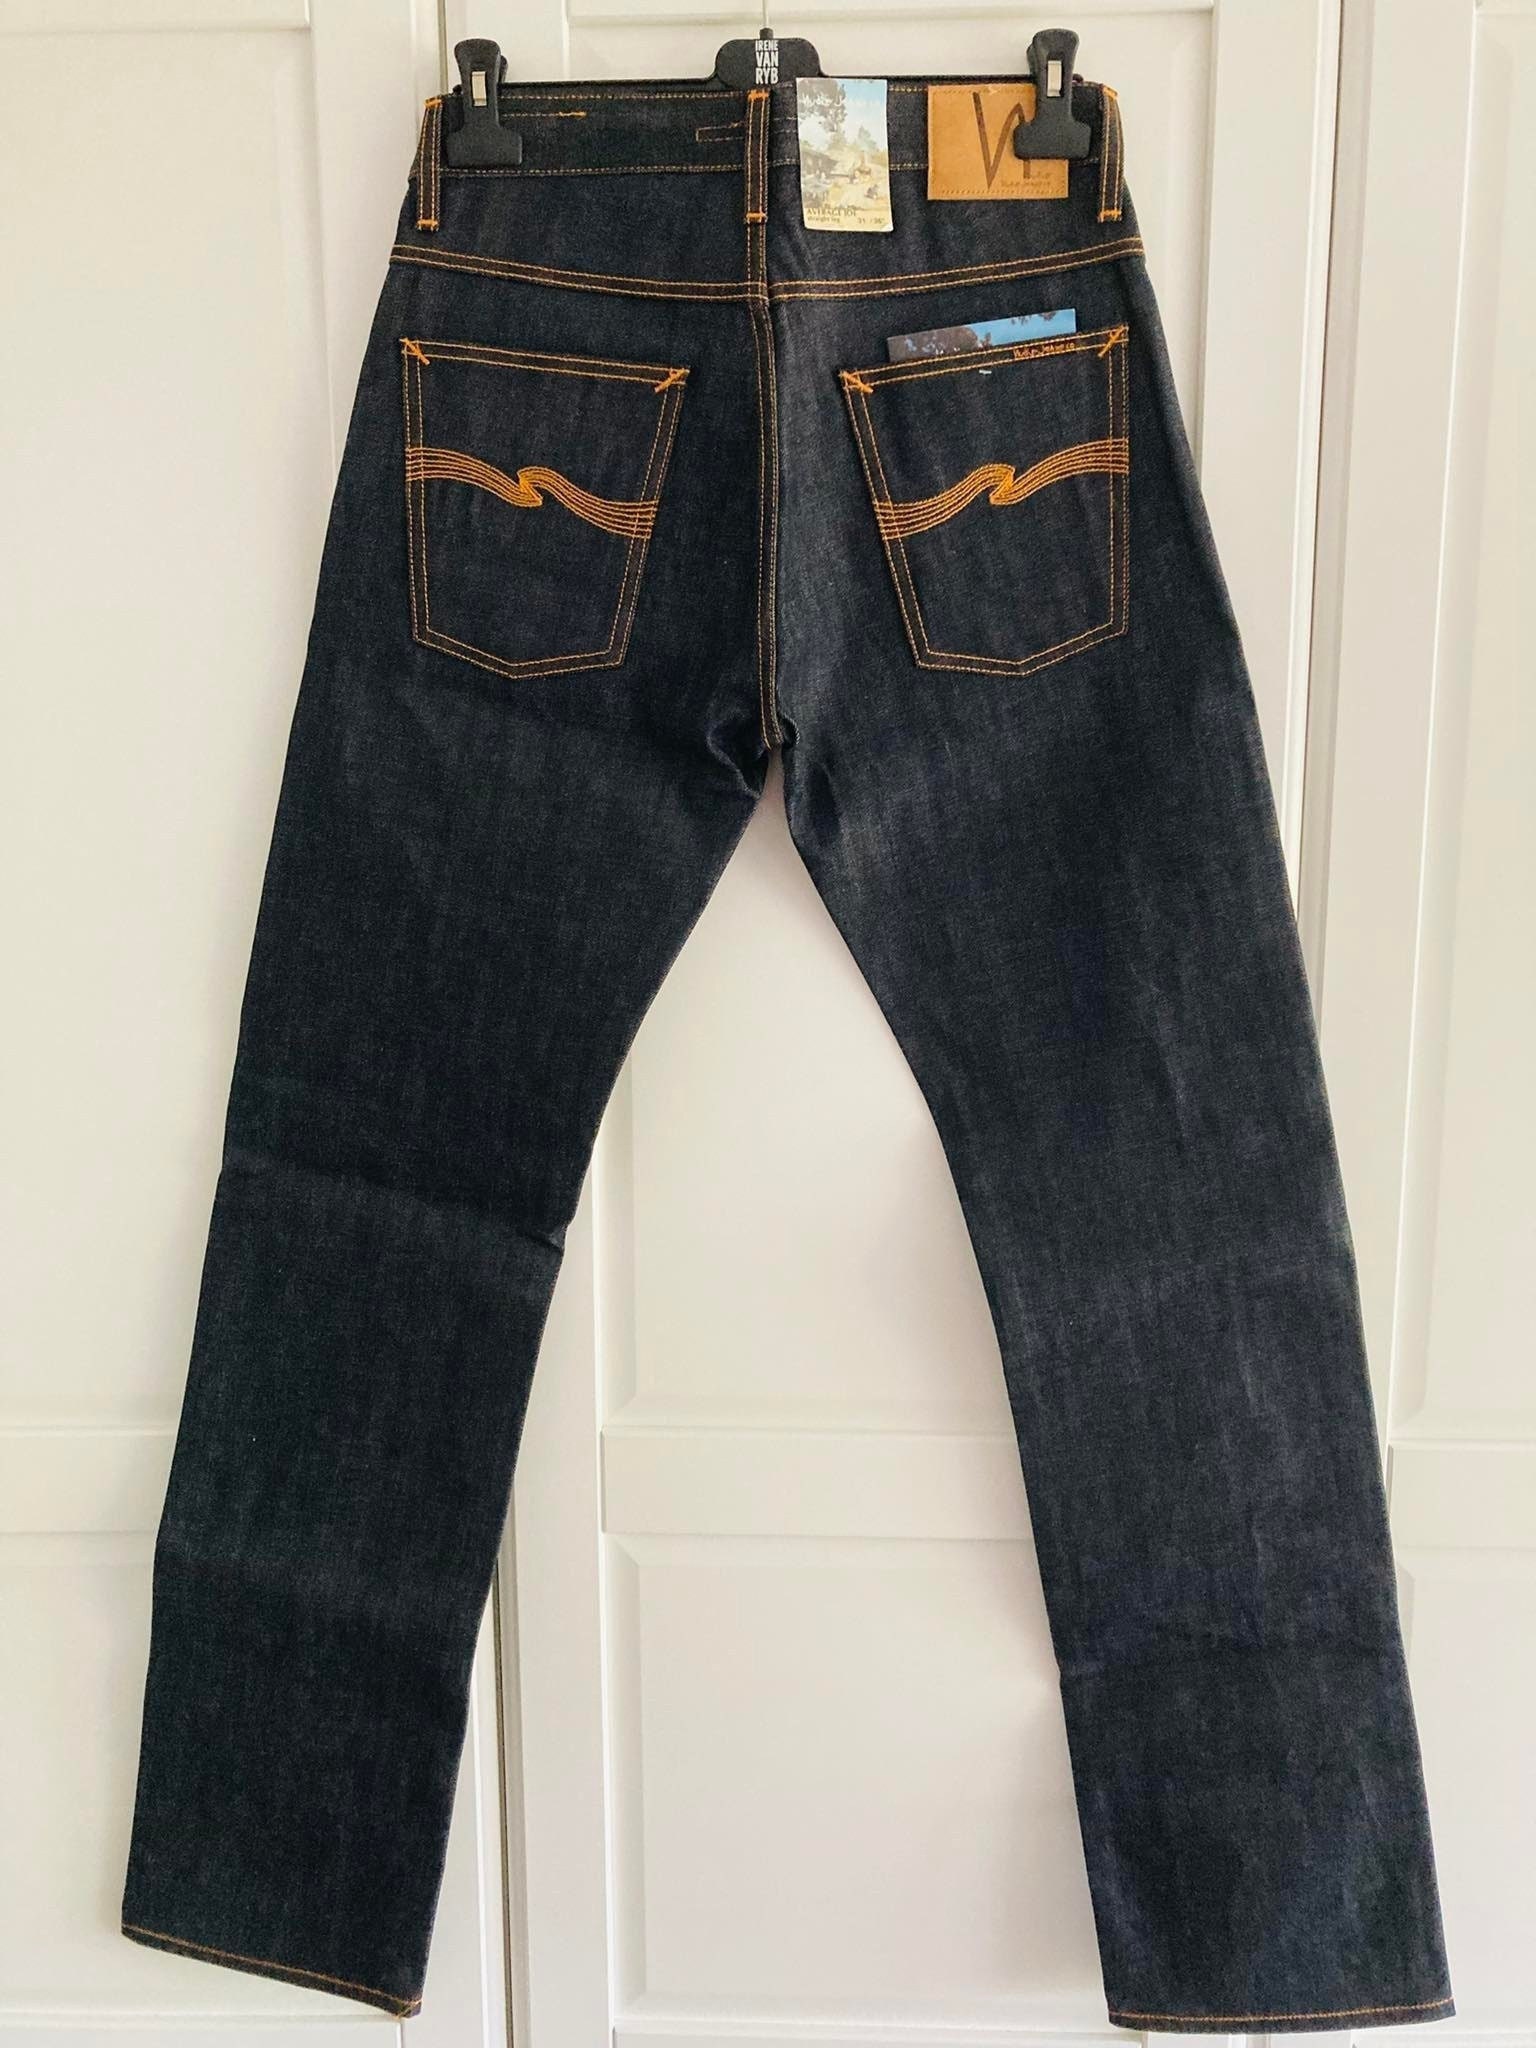 Abbigliamento Abbigliamento uomo Pantaloni Vintage Uomo Blu Denim KLIXS 1501 Pulsante strappato Western Casual Jeans Taglia 46 W 31 L 36 